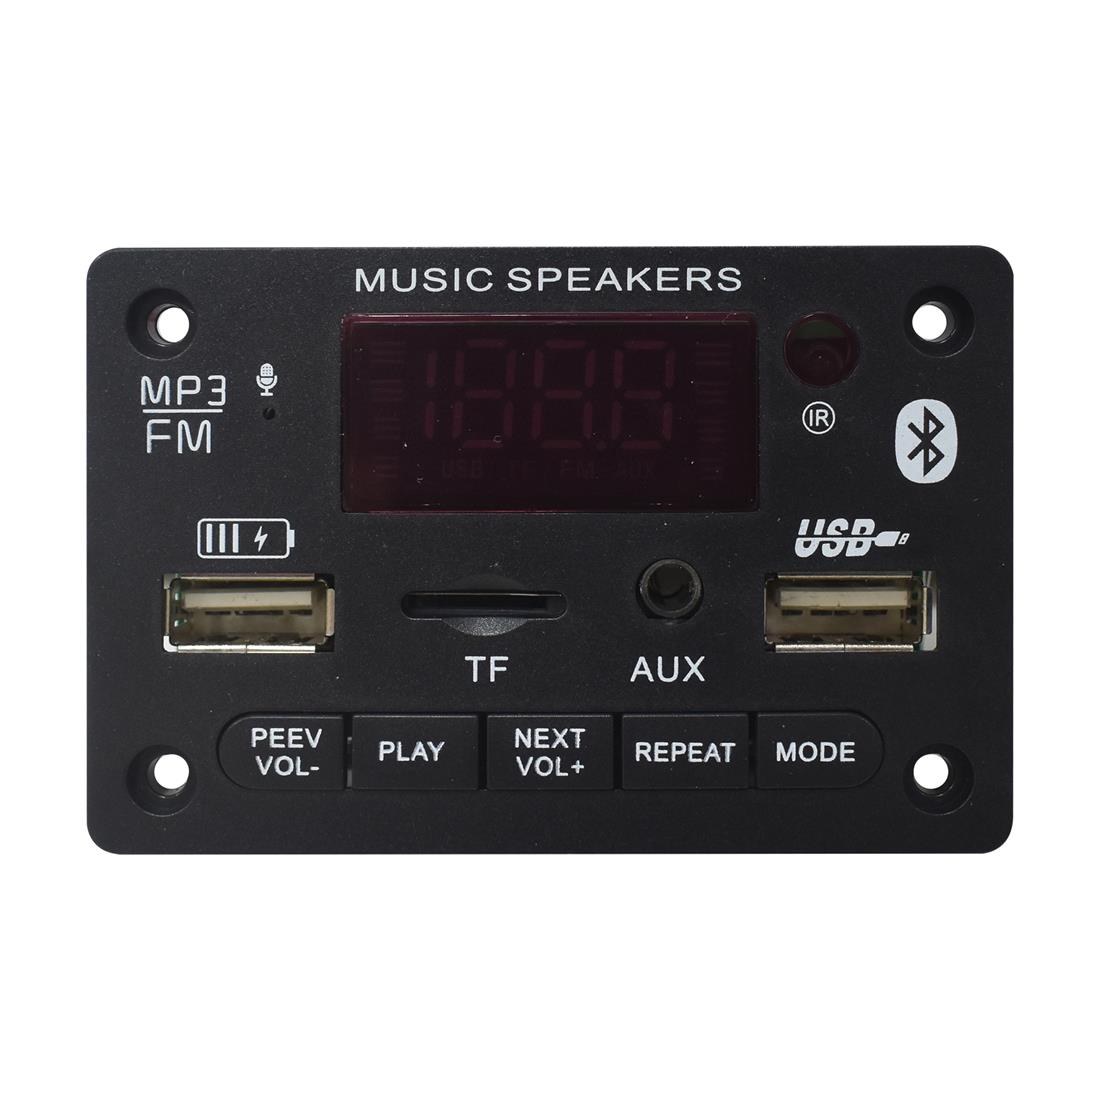 Módulo Reproductor MP3 USB BLUETOOTH RADIO amplificador audio 3